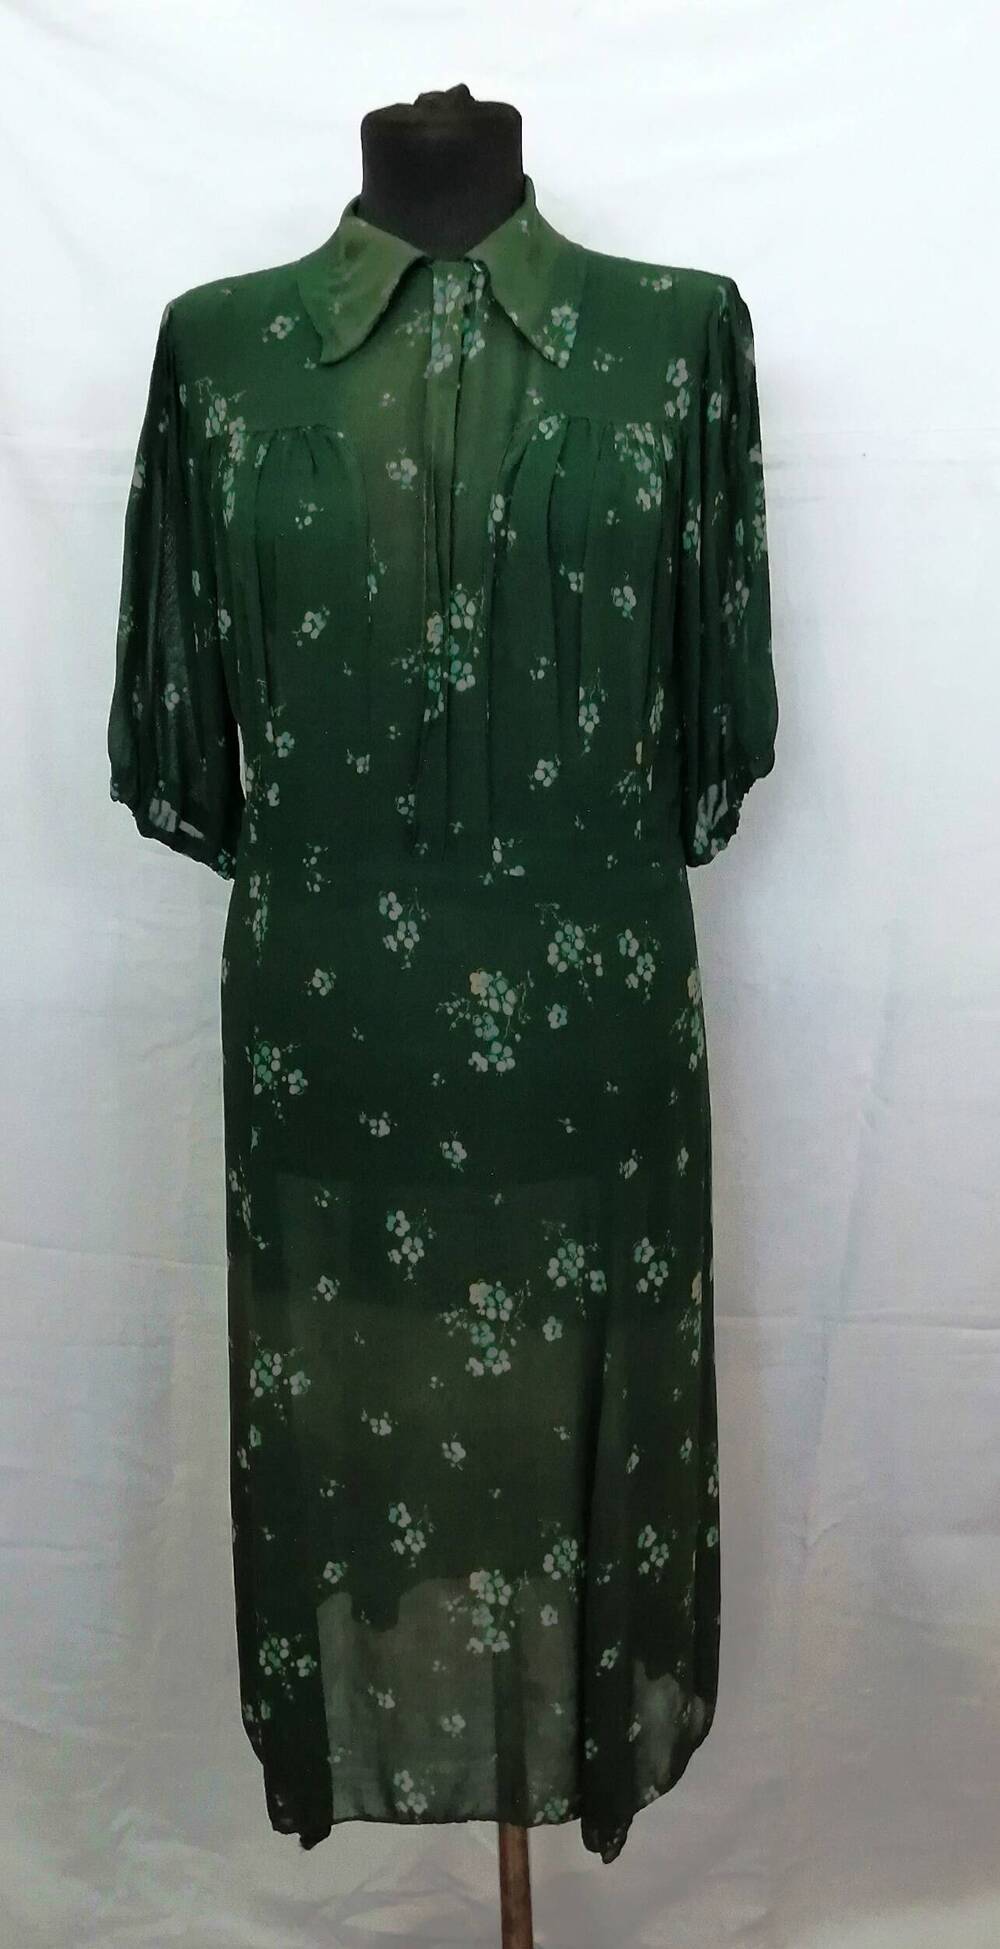 Платье женское из креп-жоржета зеленого цвета в цветочек, отрезное по талии, прямой покрой, на груди кокетка.